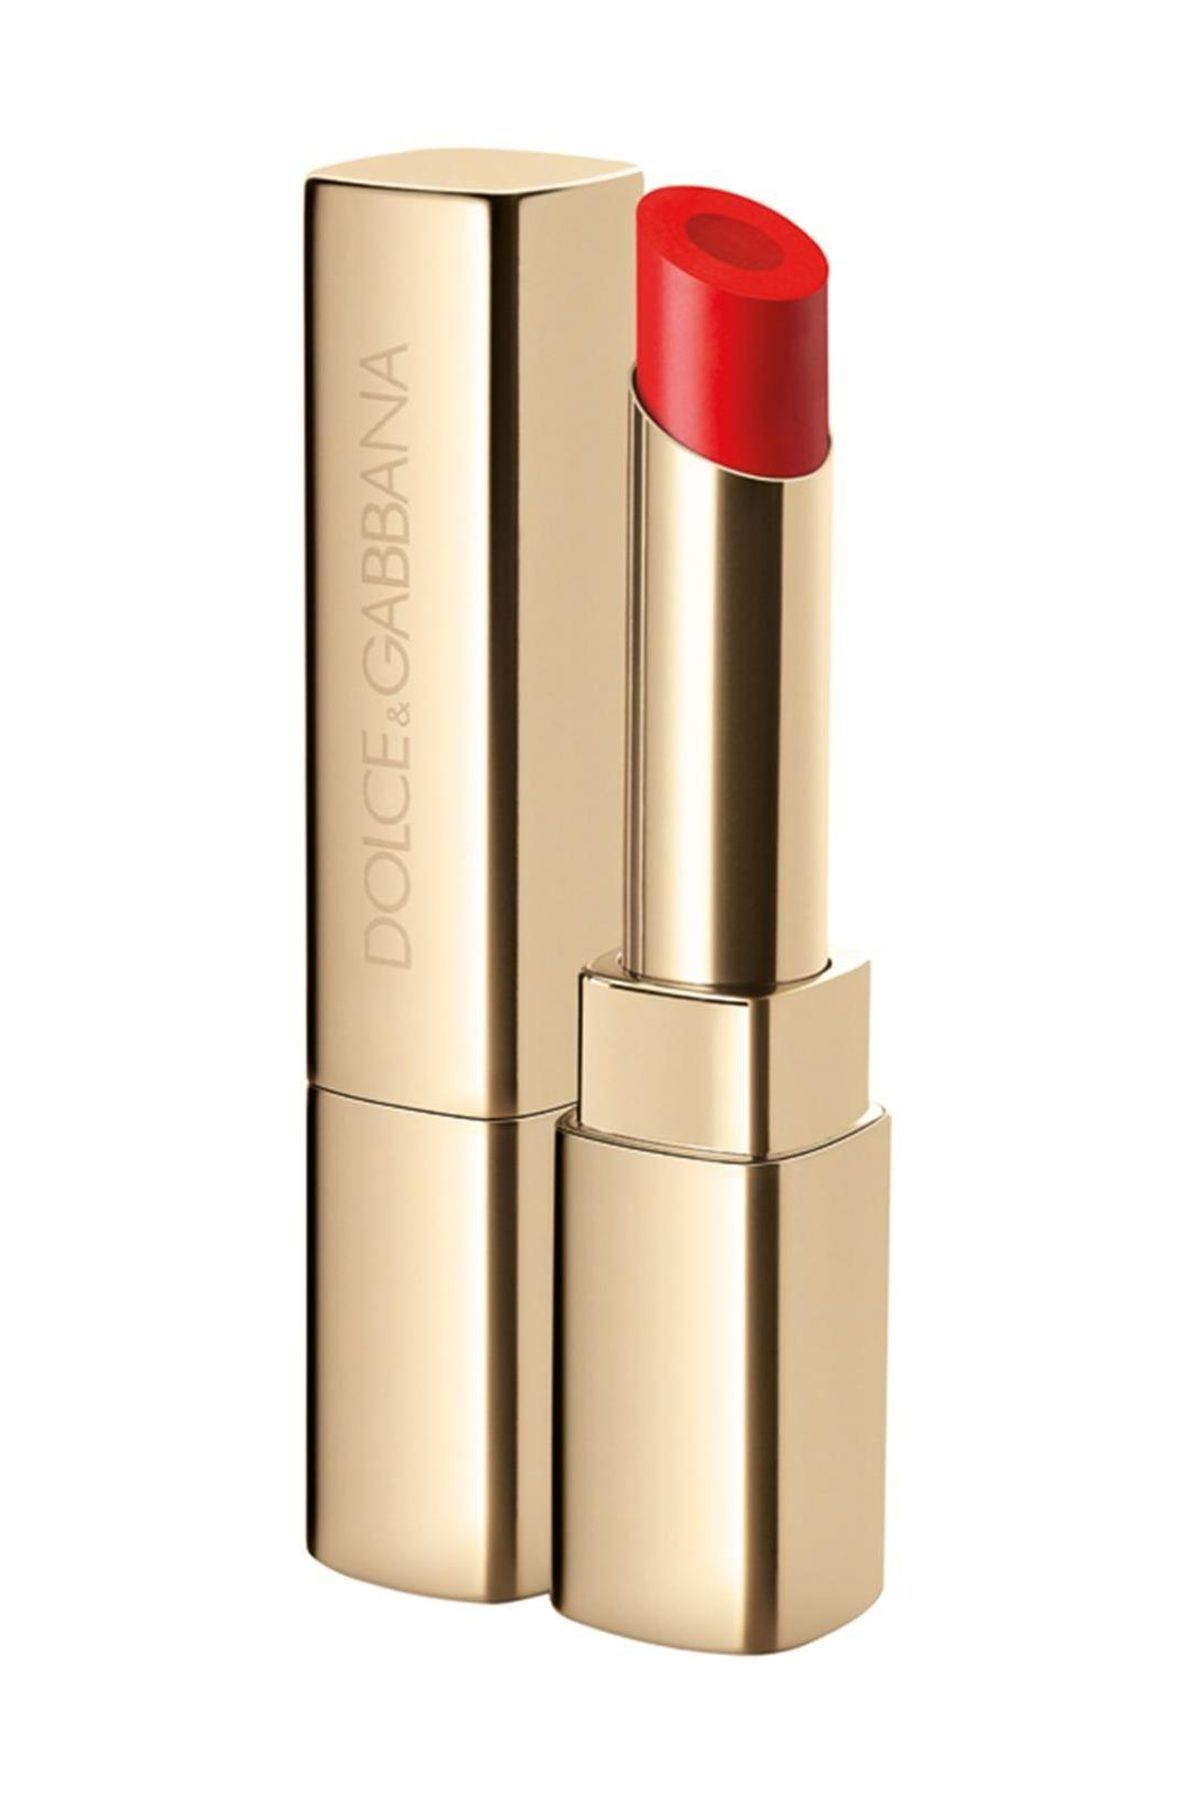 Dolce&Gabbana Passion Duo Lipstick 160 Incognito Ruj 737052479224